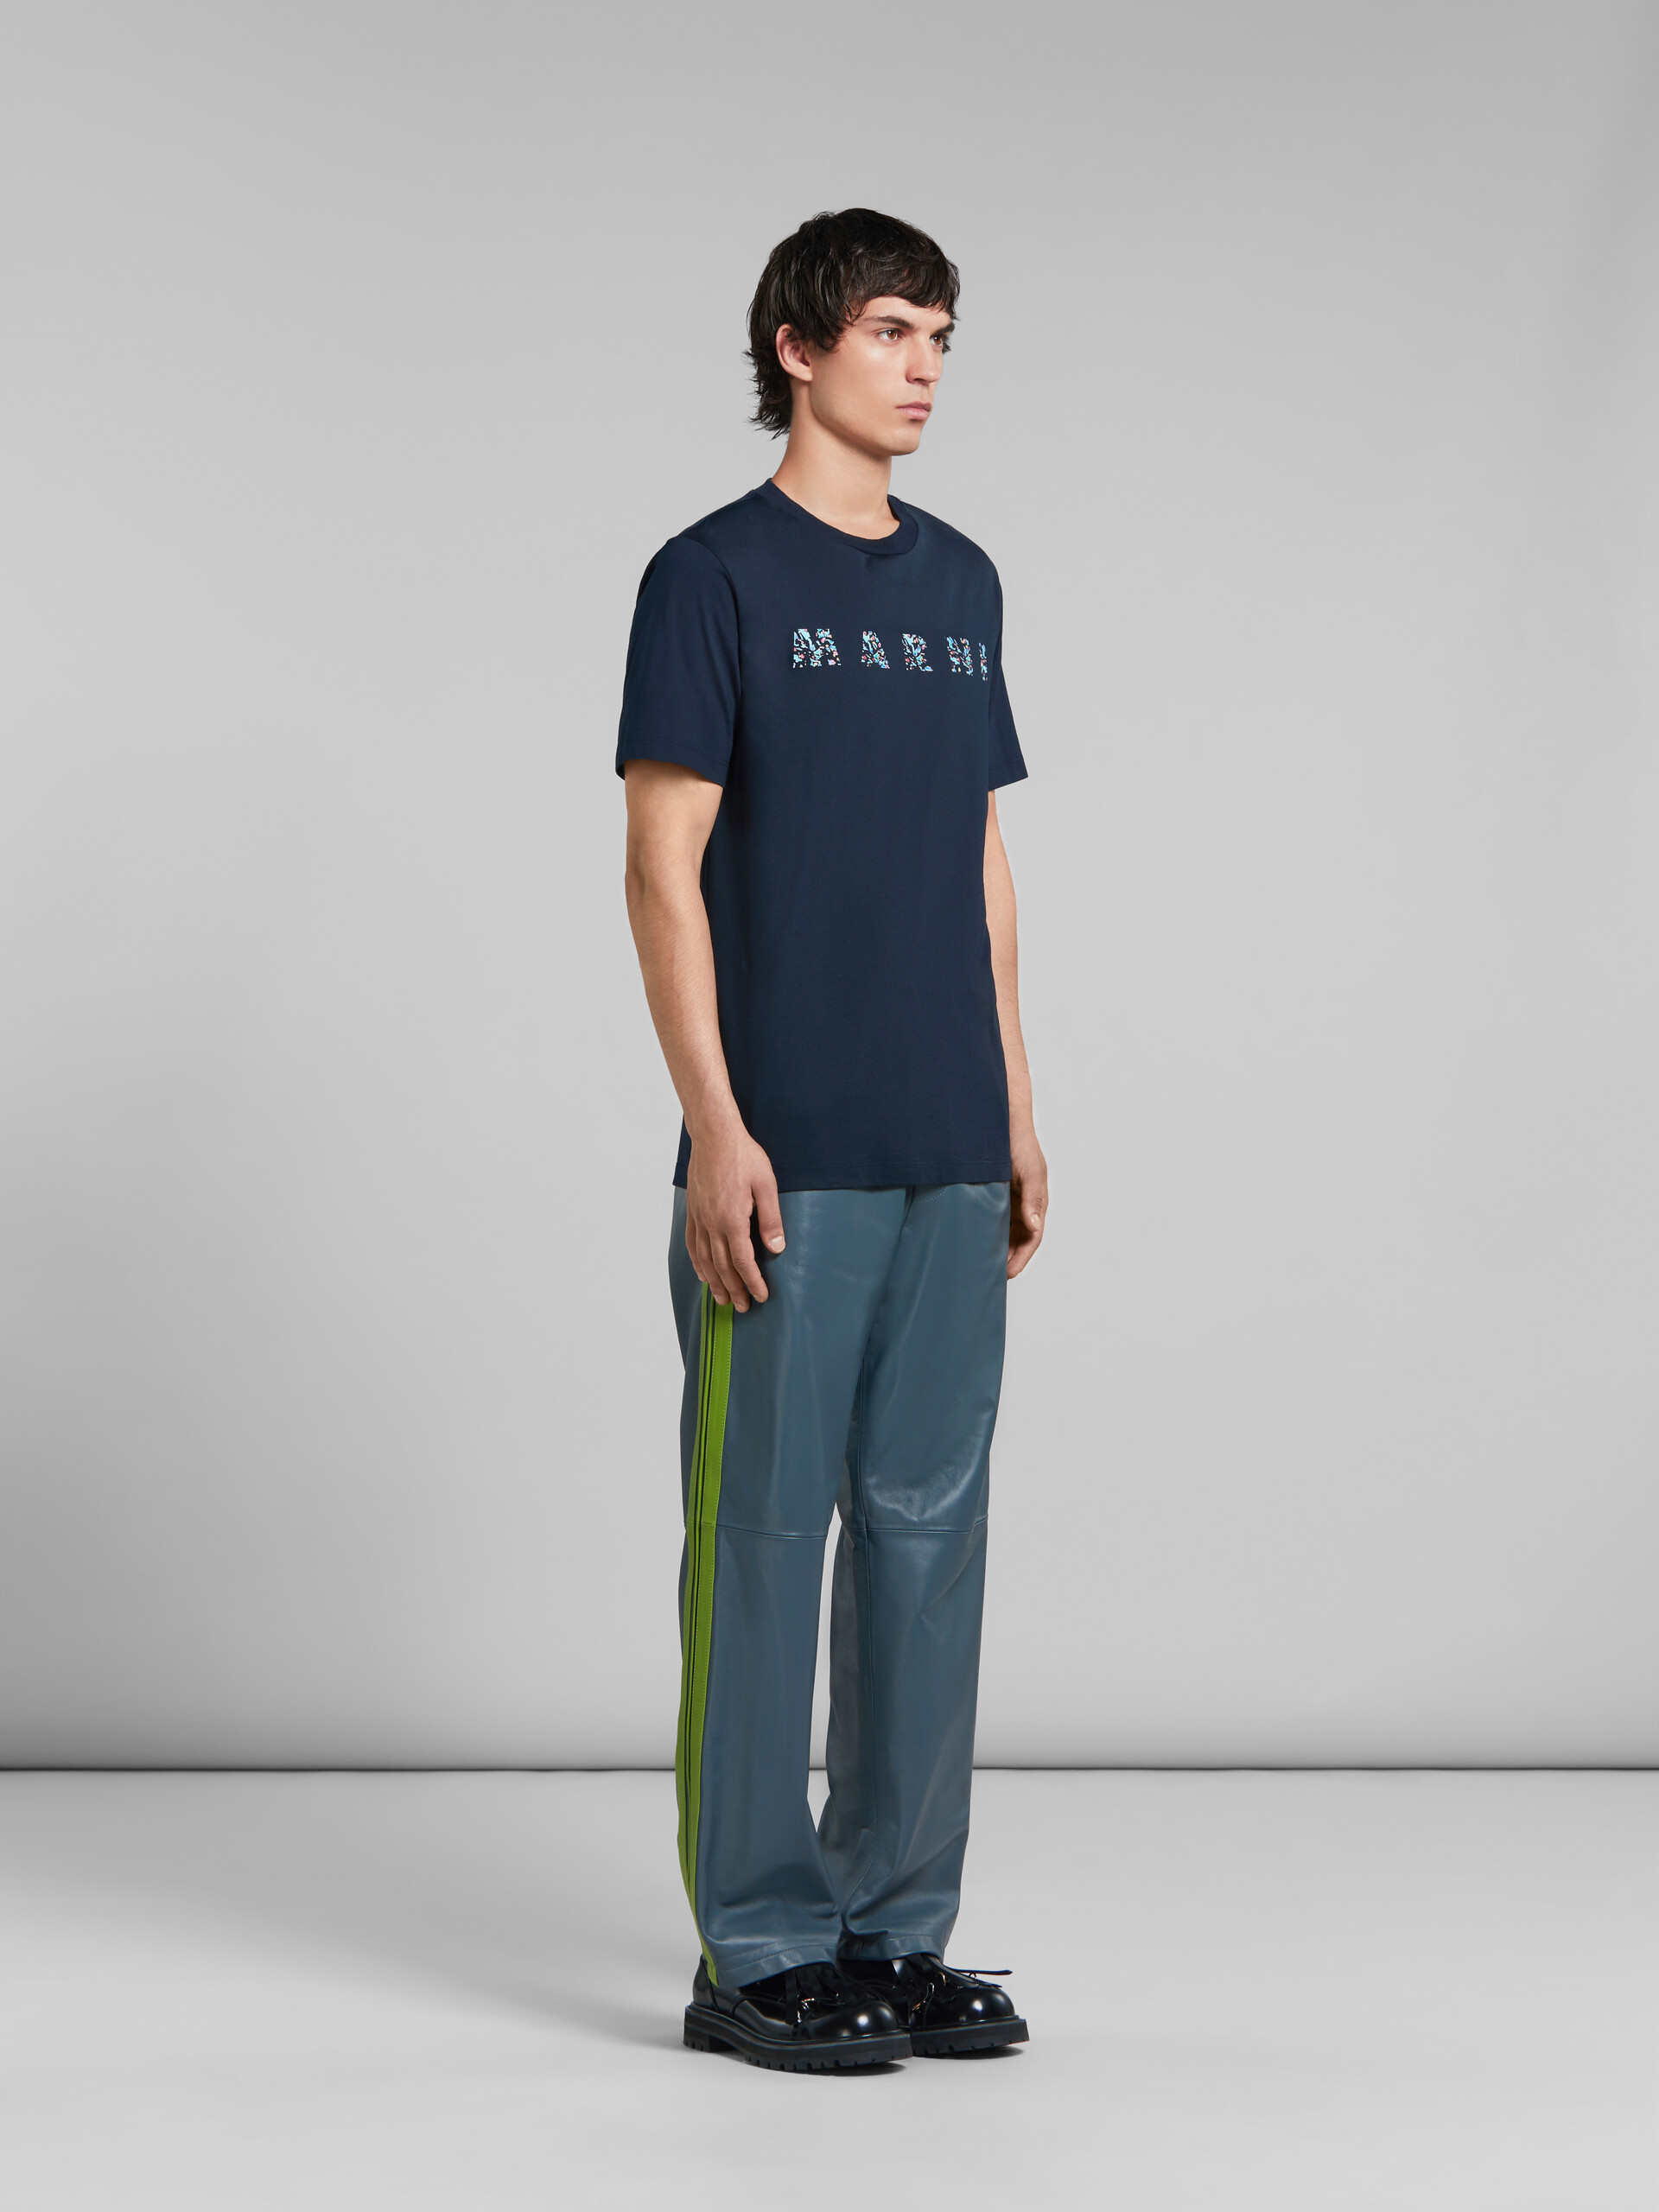 ディープブルー オーガニックコットン製 Tシャツ、Marniプリント入り - Tシャツ - Image 5